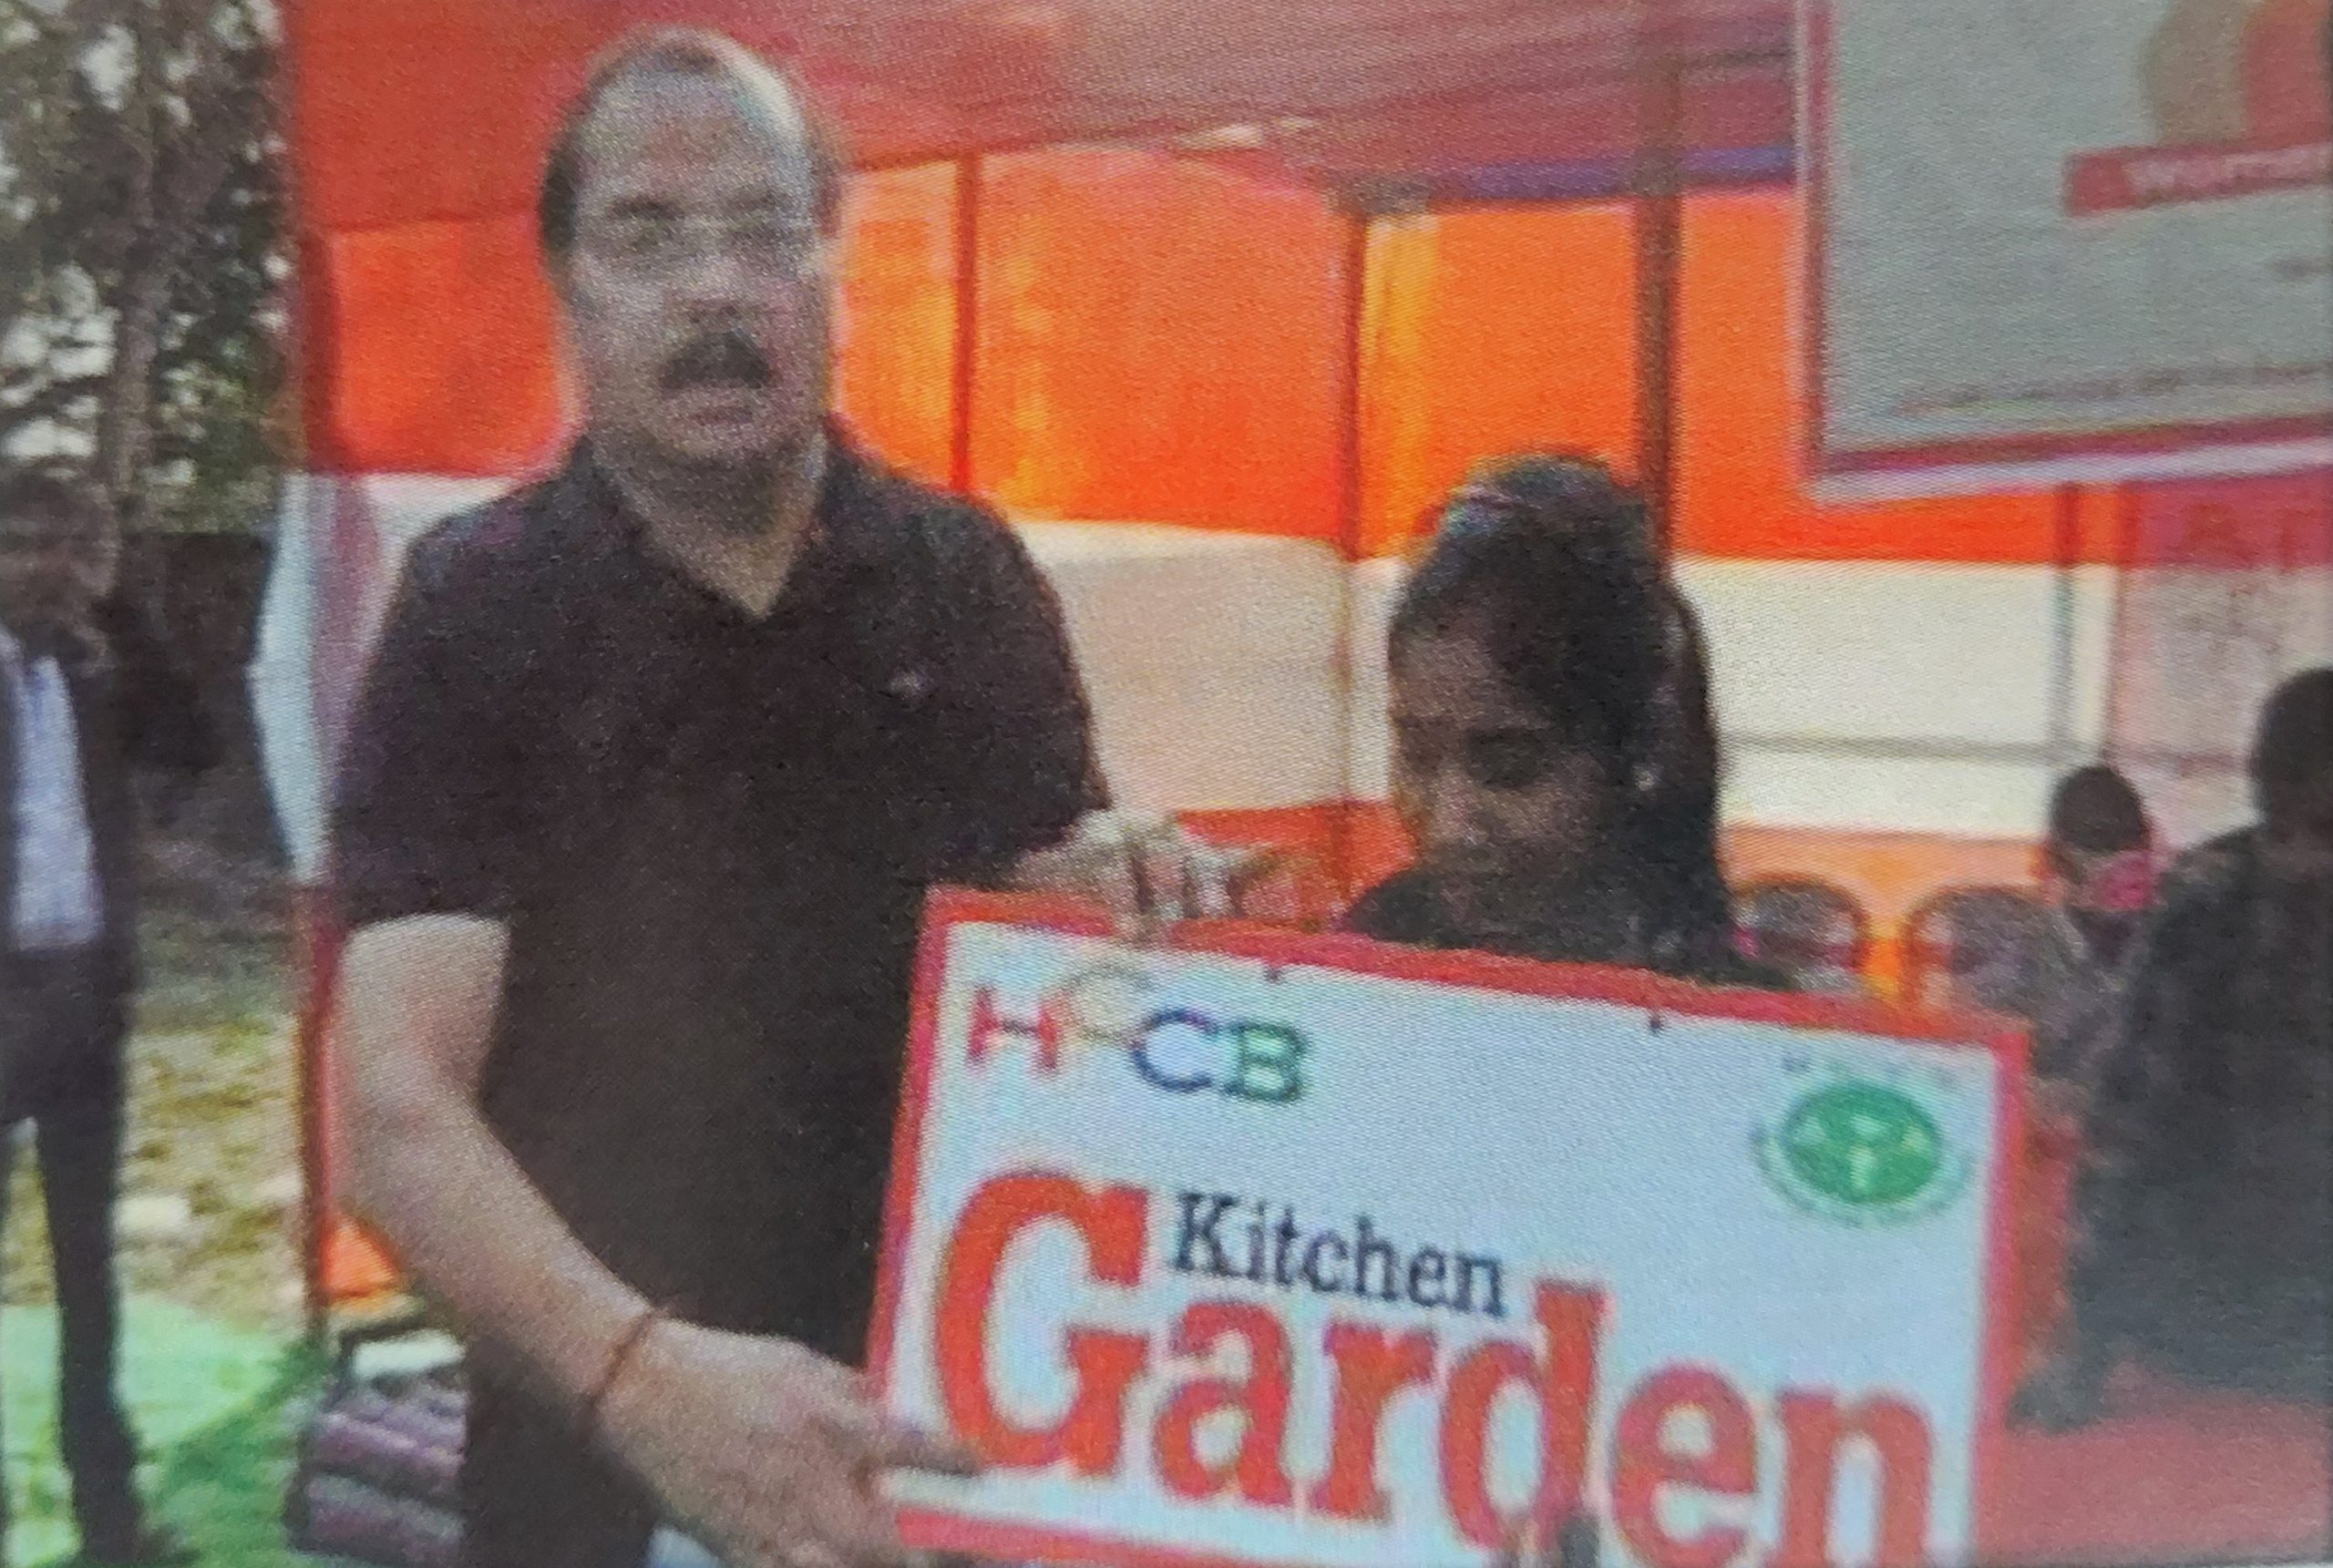 Kitchen Garden Support